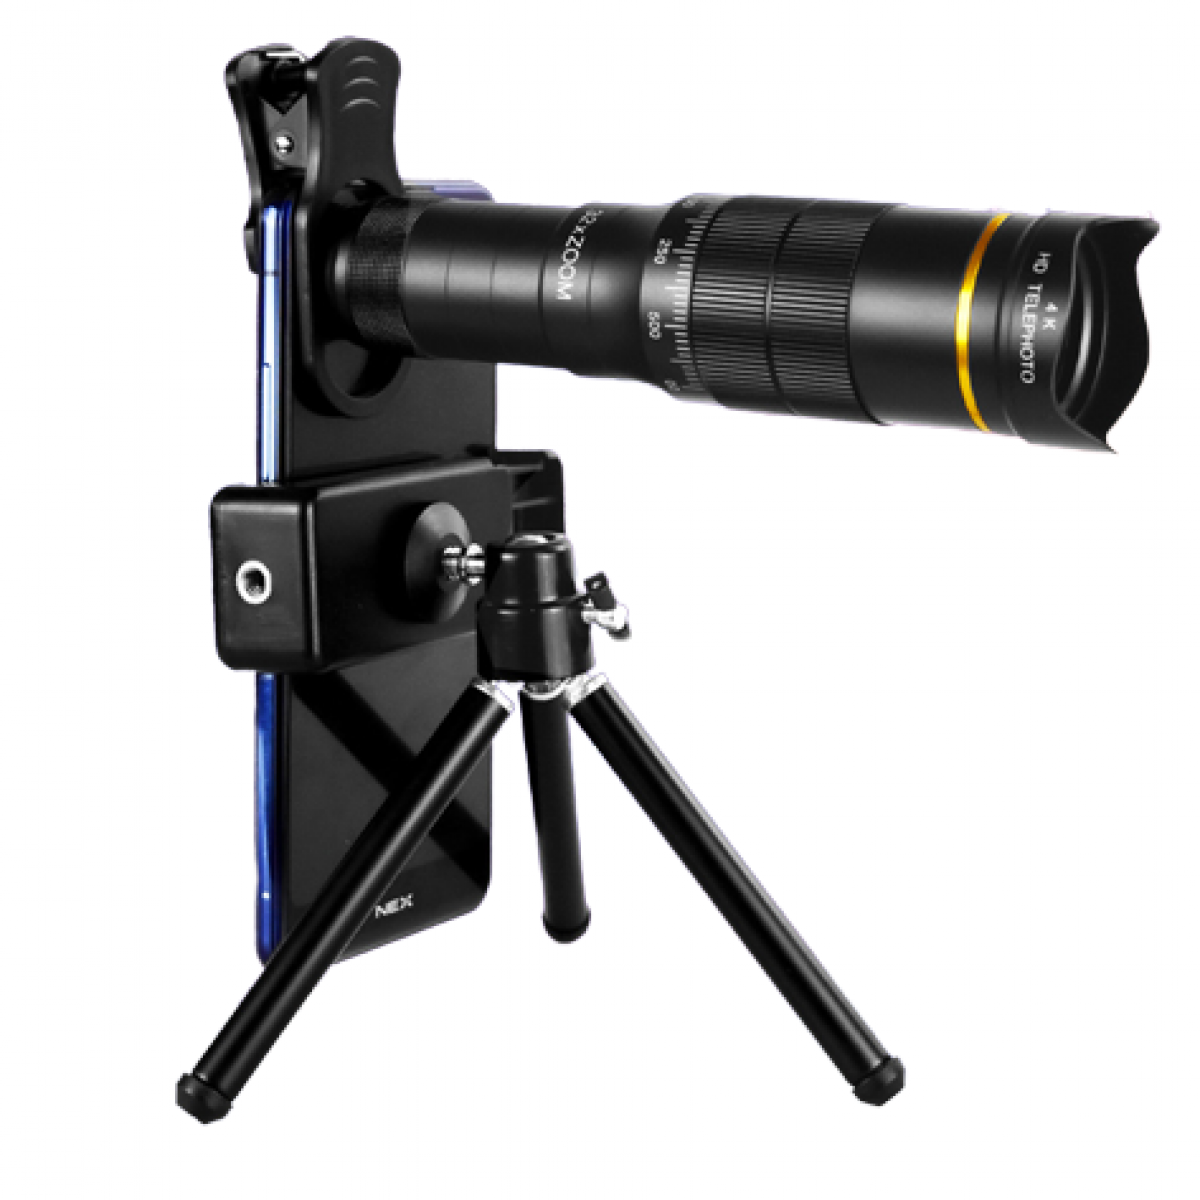 Zoom-Telefon-Teleskopobjektiv Fernrohr 32x, doppelt mit Stativ 7,7 verstellbares mm, 32-fach INF